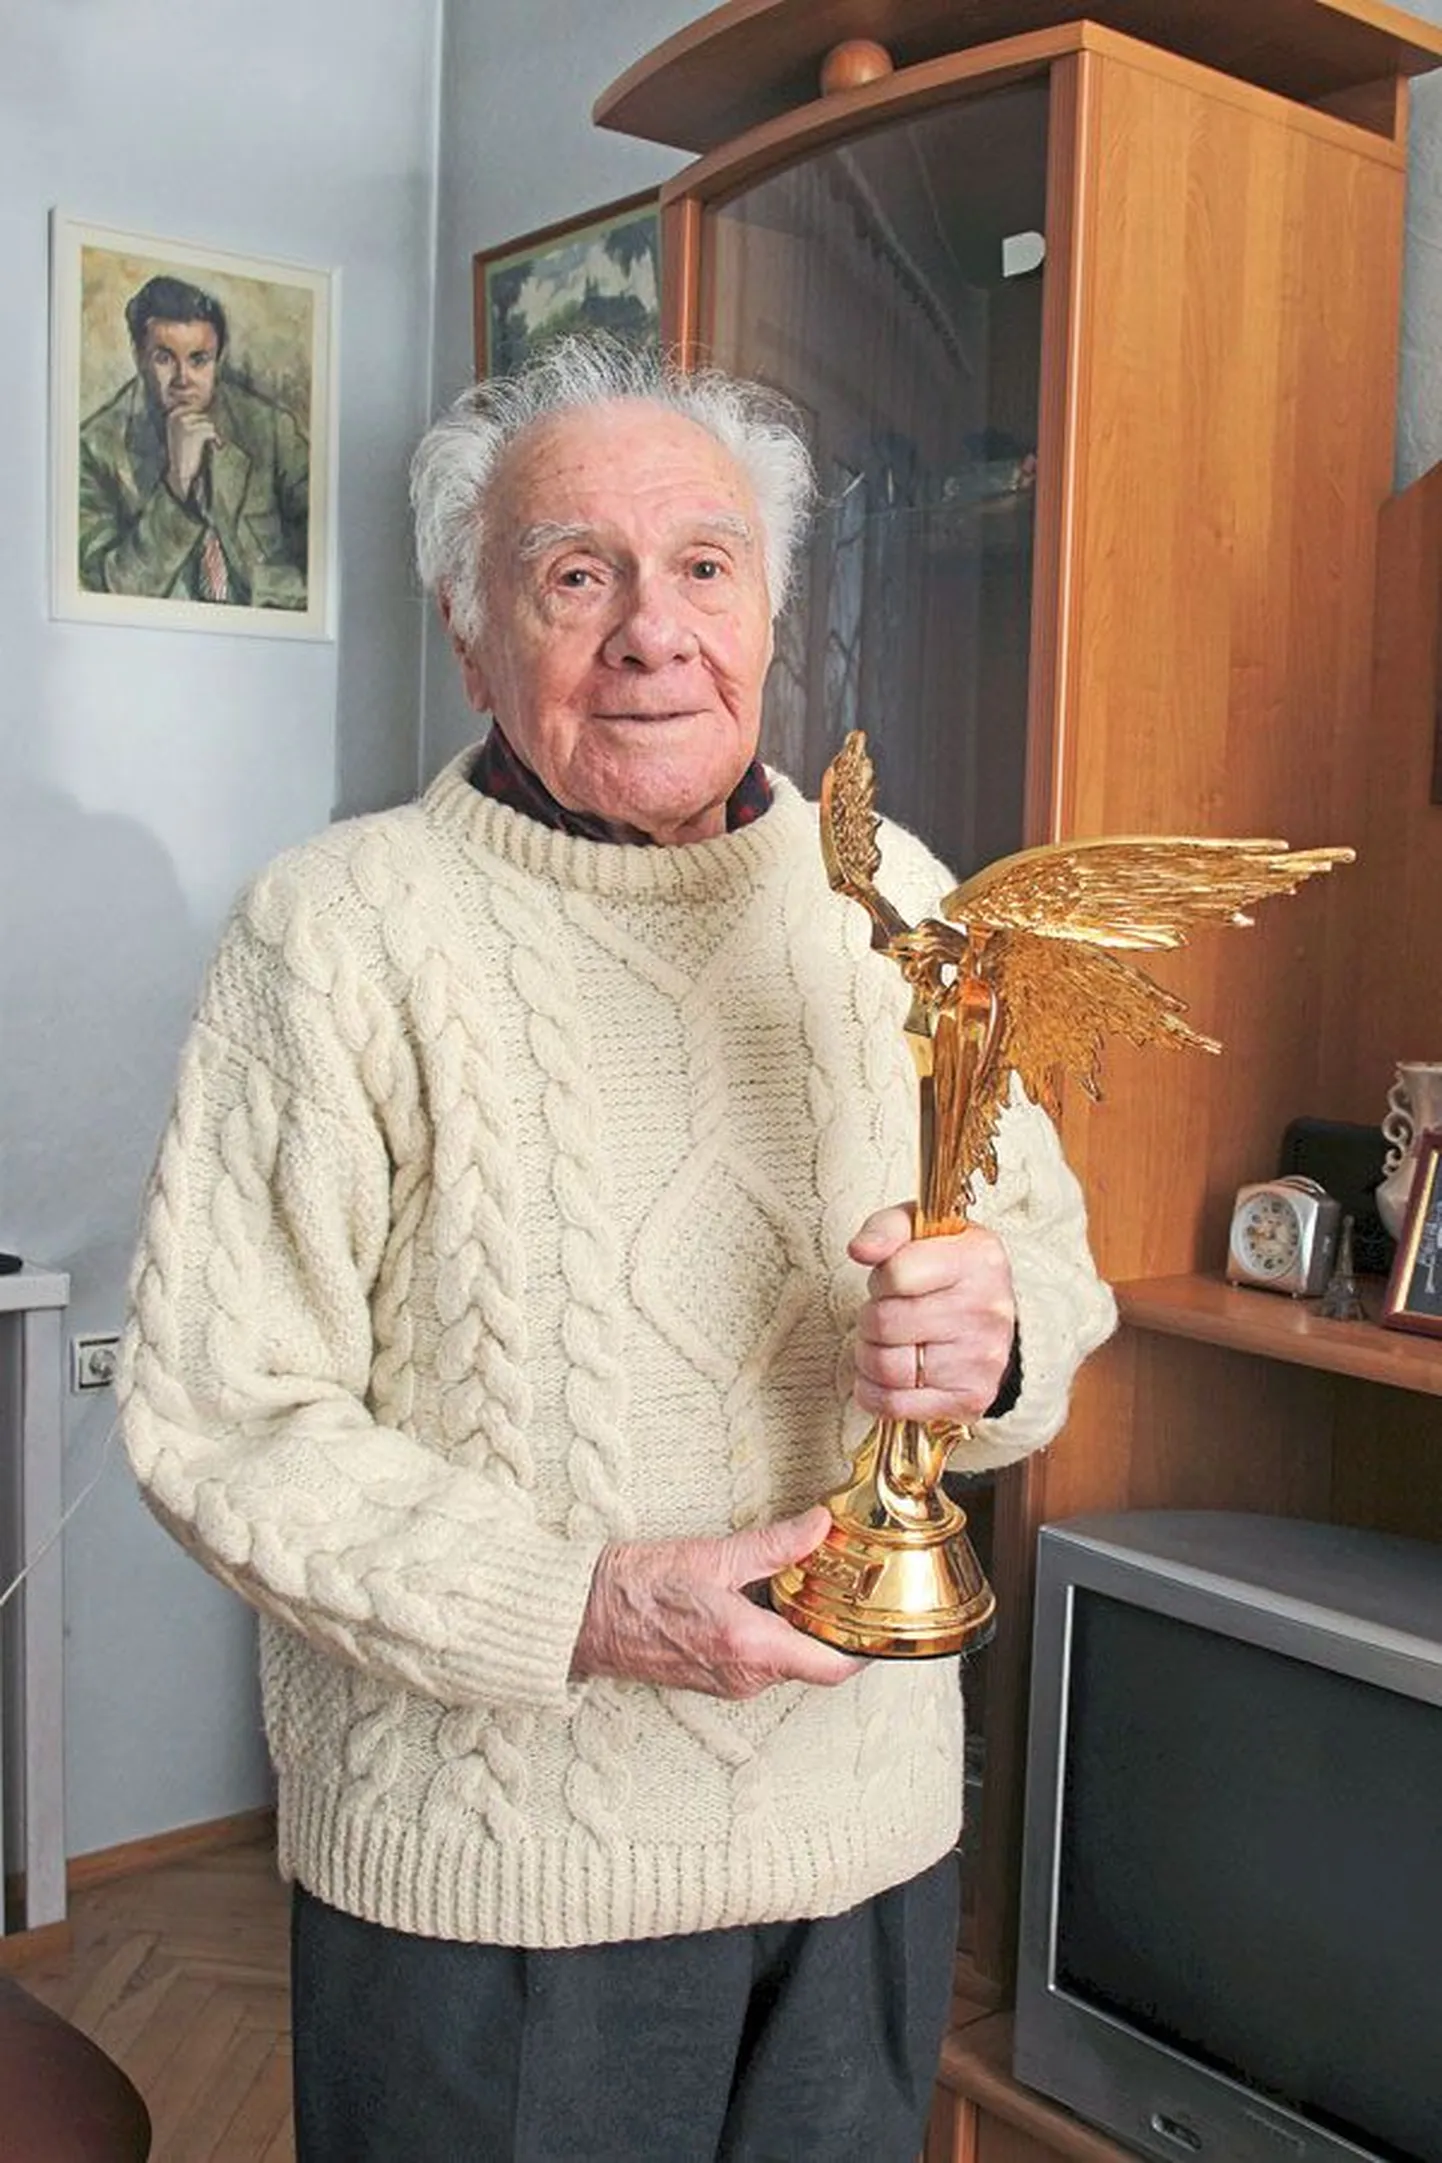 В 2005 году Семен Семенович Школьников получил российскую кинонаграду «Ника» 
за съемки на фронтах Великой Отечественной войны.